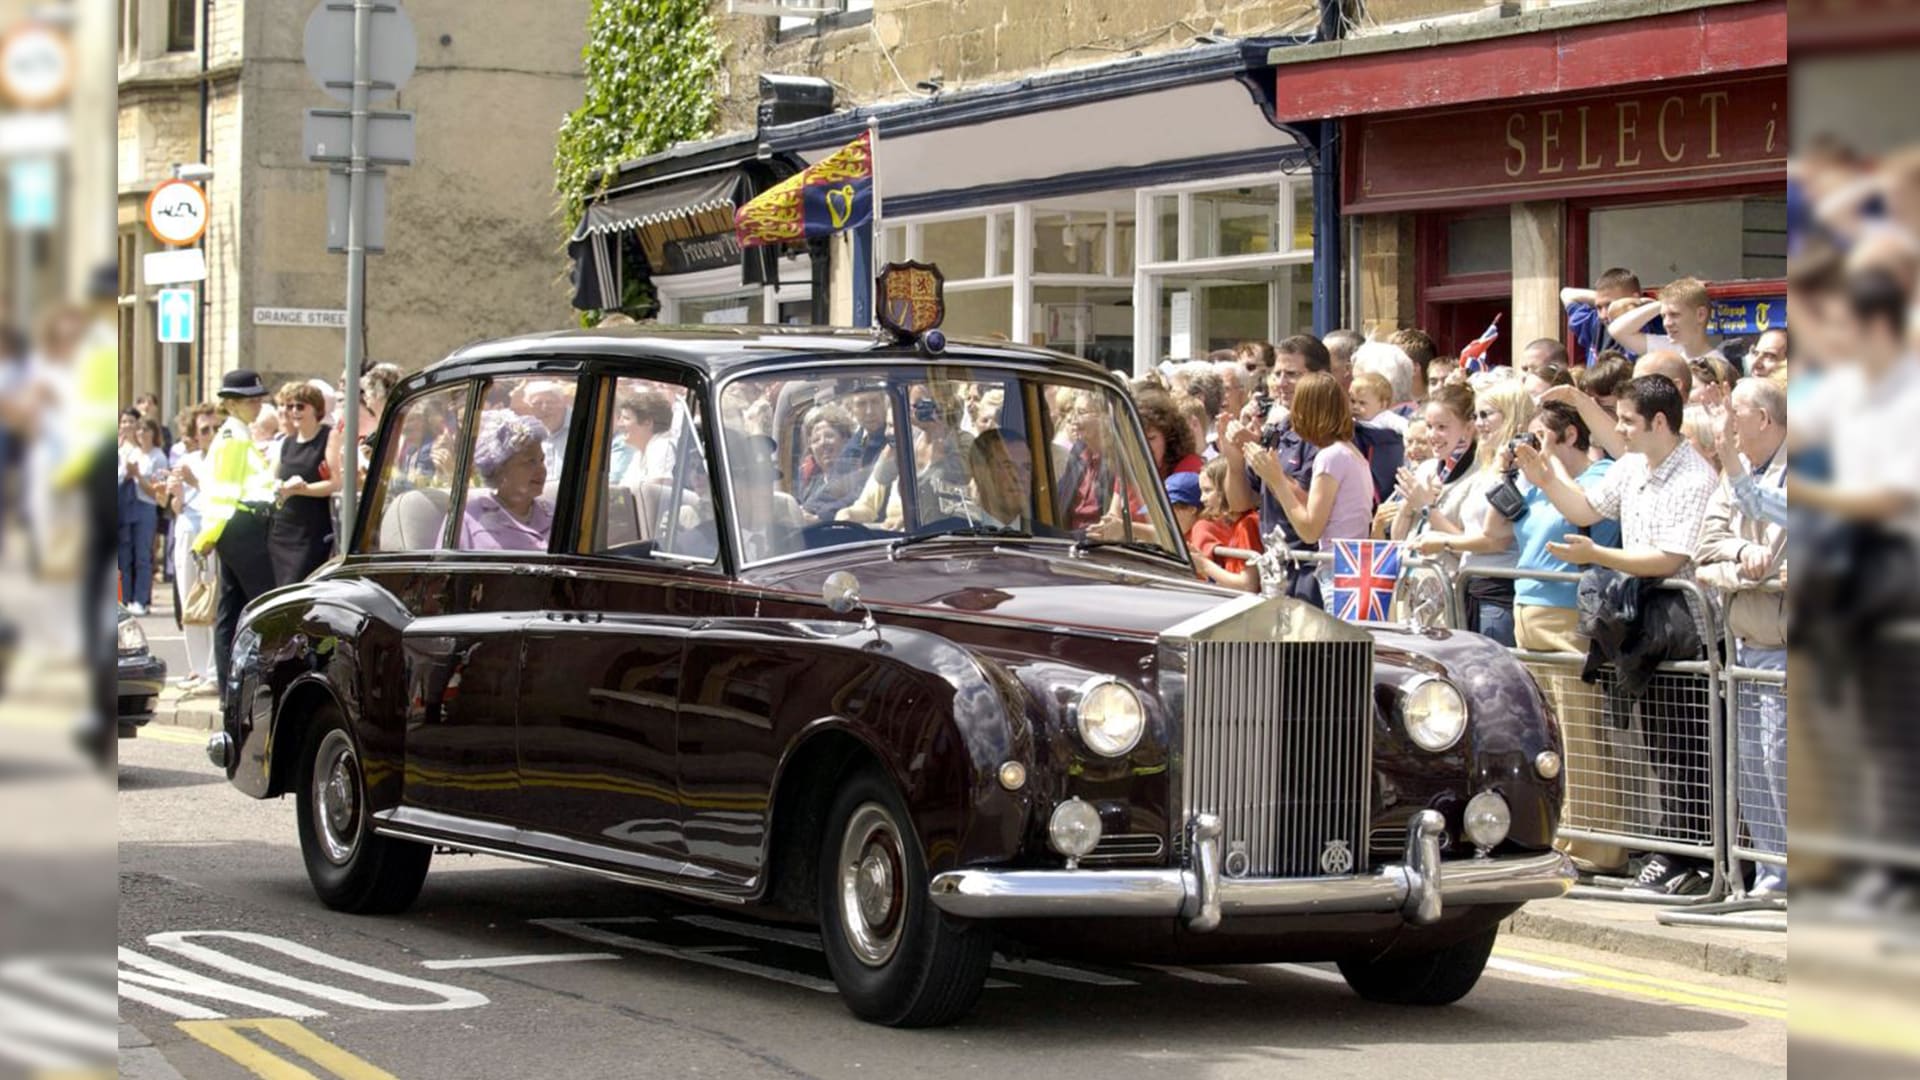 أتريد قيادة السيارة كالملكيين؟ سيارة الملكة إليزابيث الثانية في مزاد رولز رويس العلني